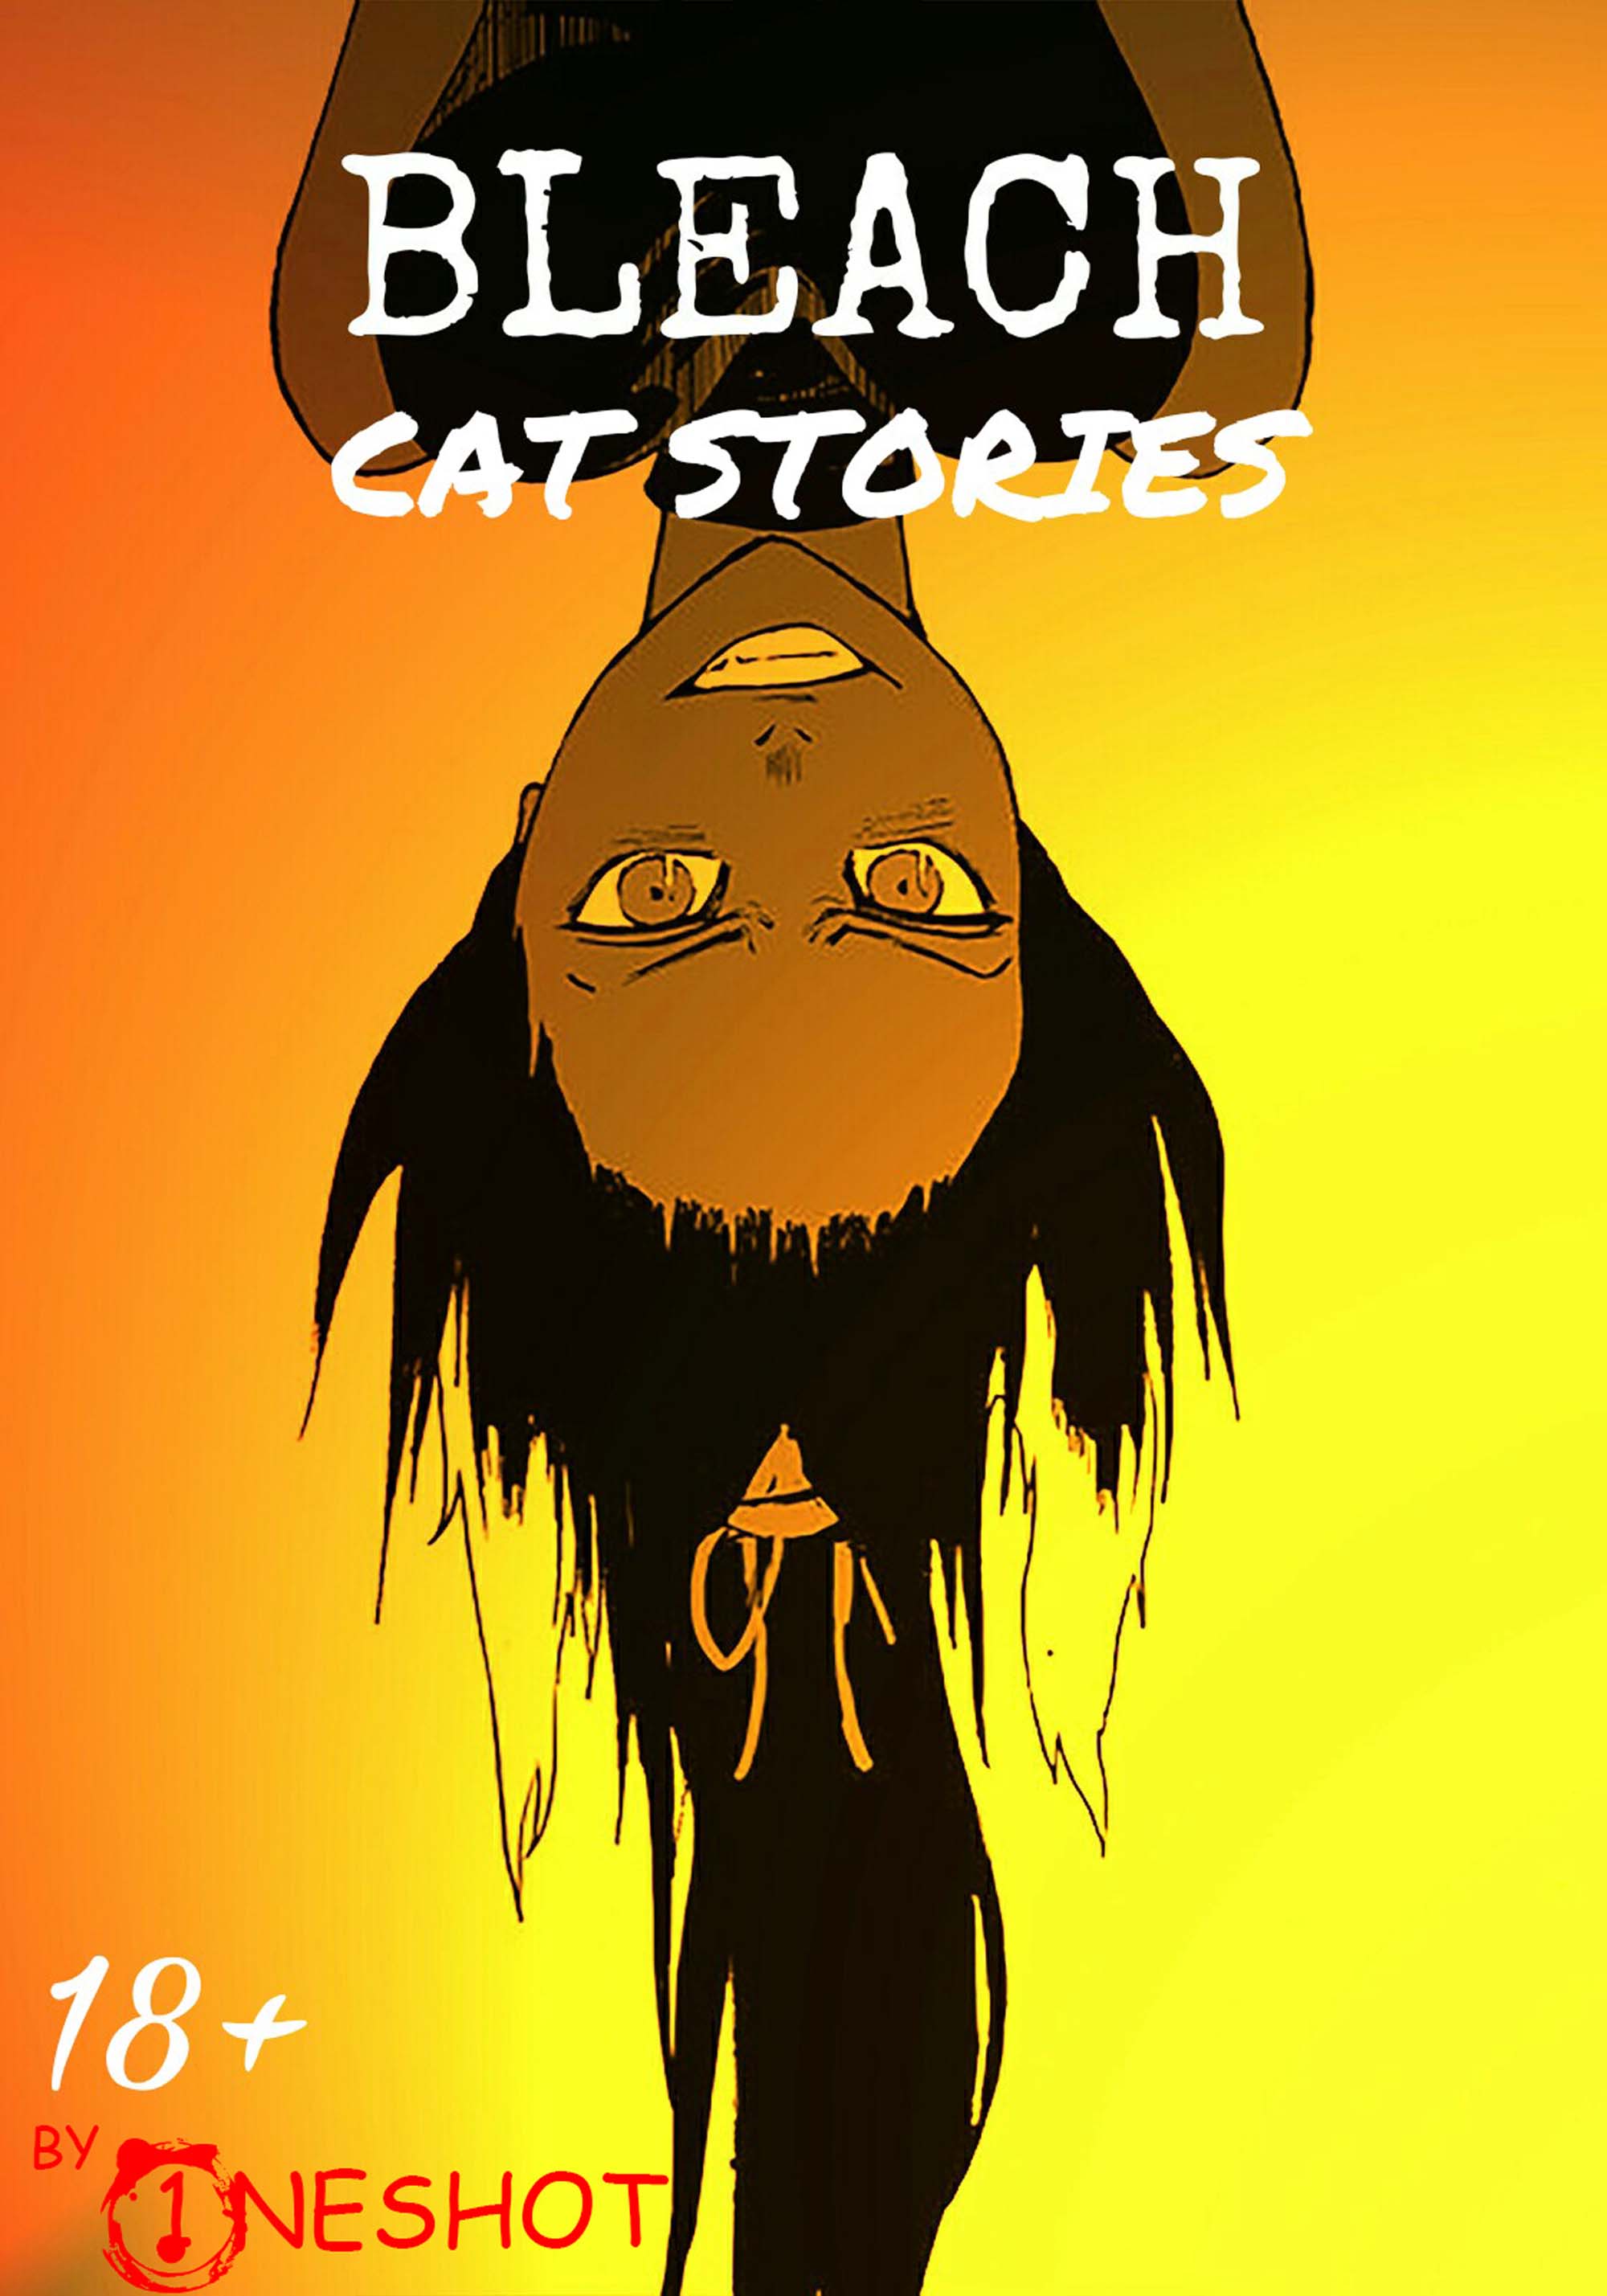 BLEACH Cat stories by Oneshot Hentai Comic